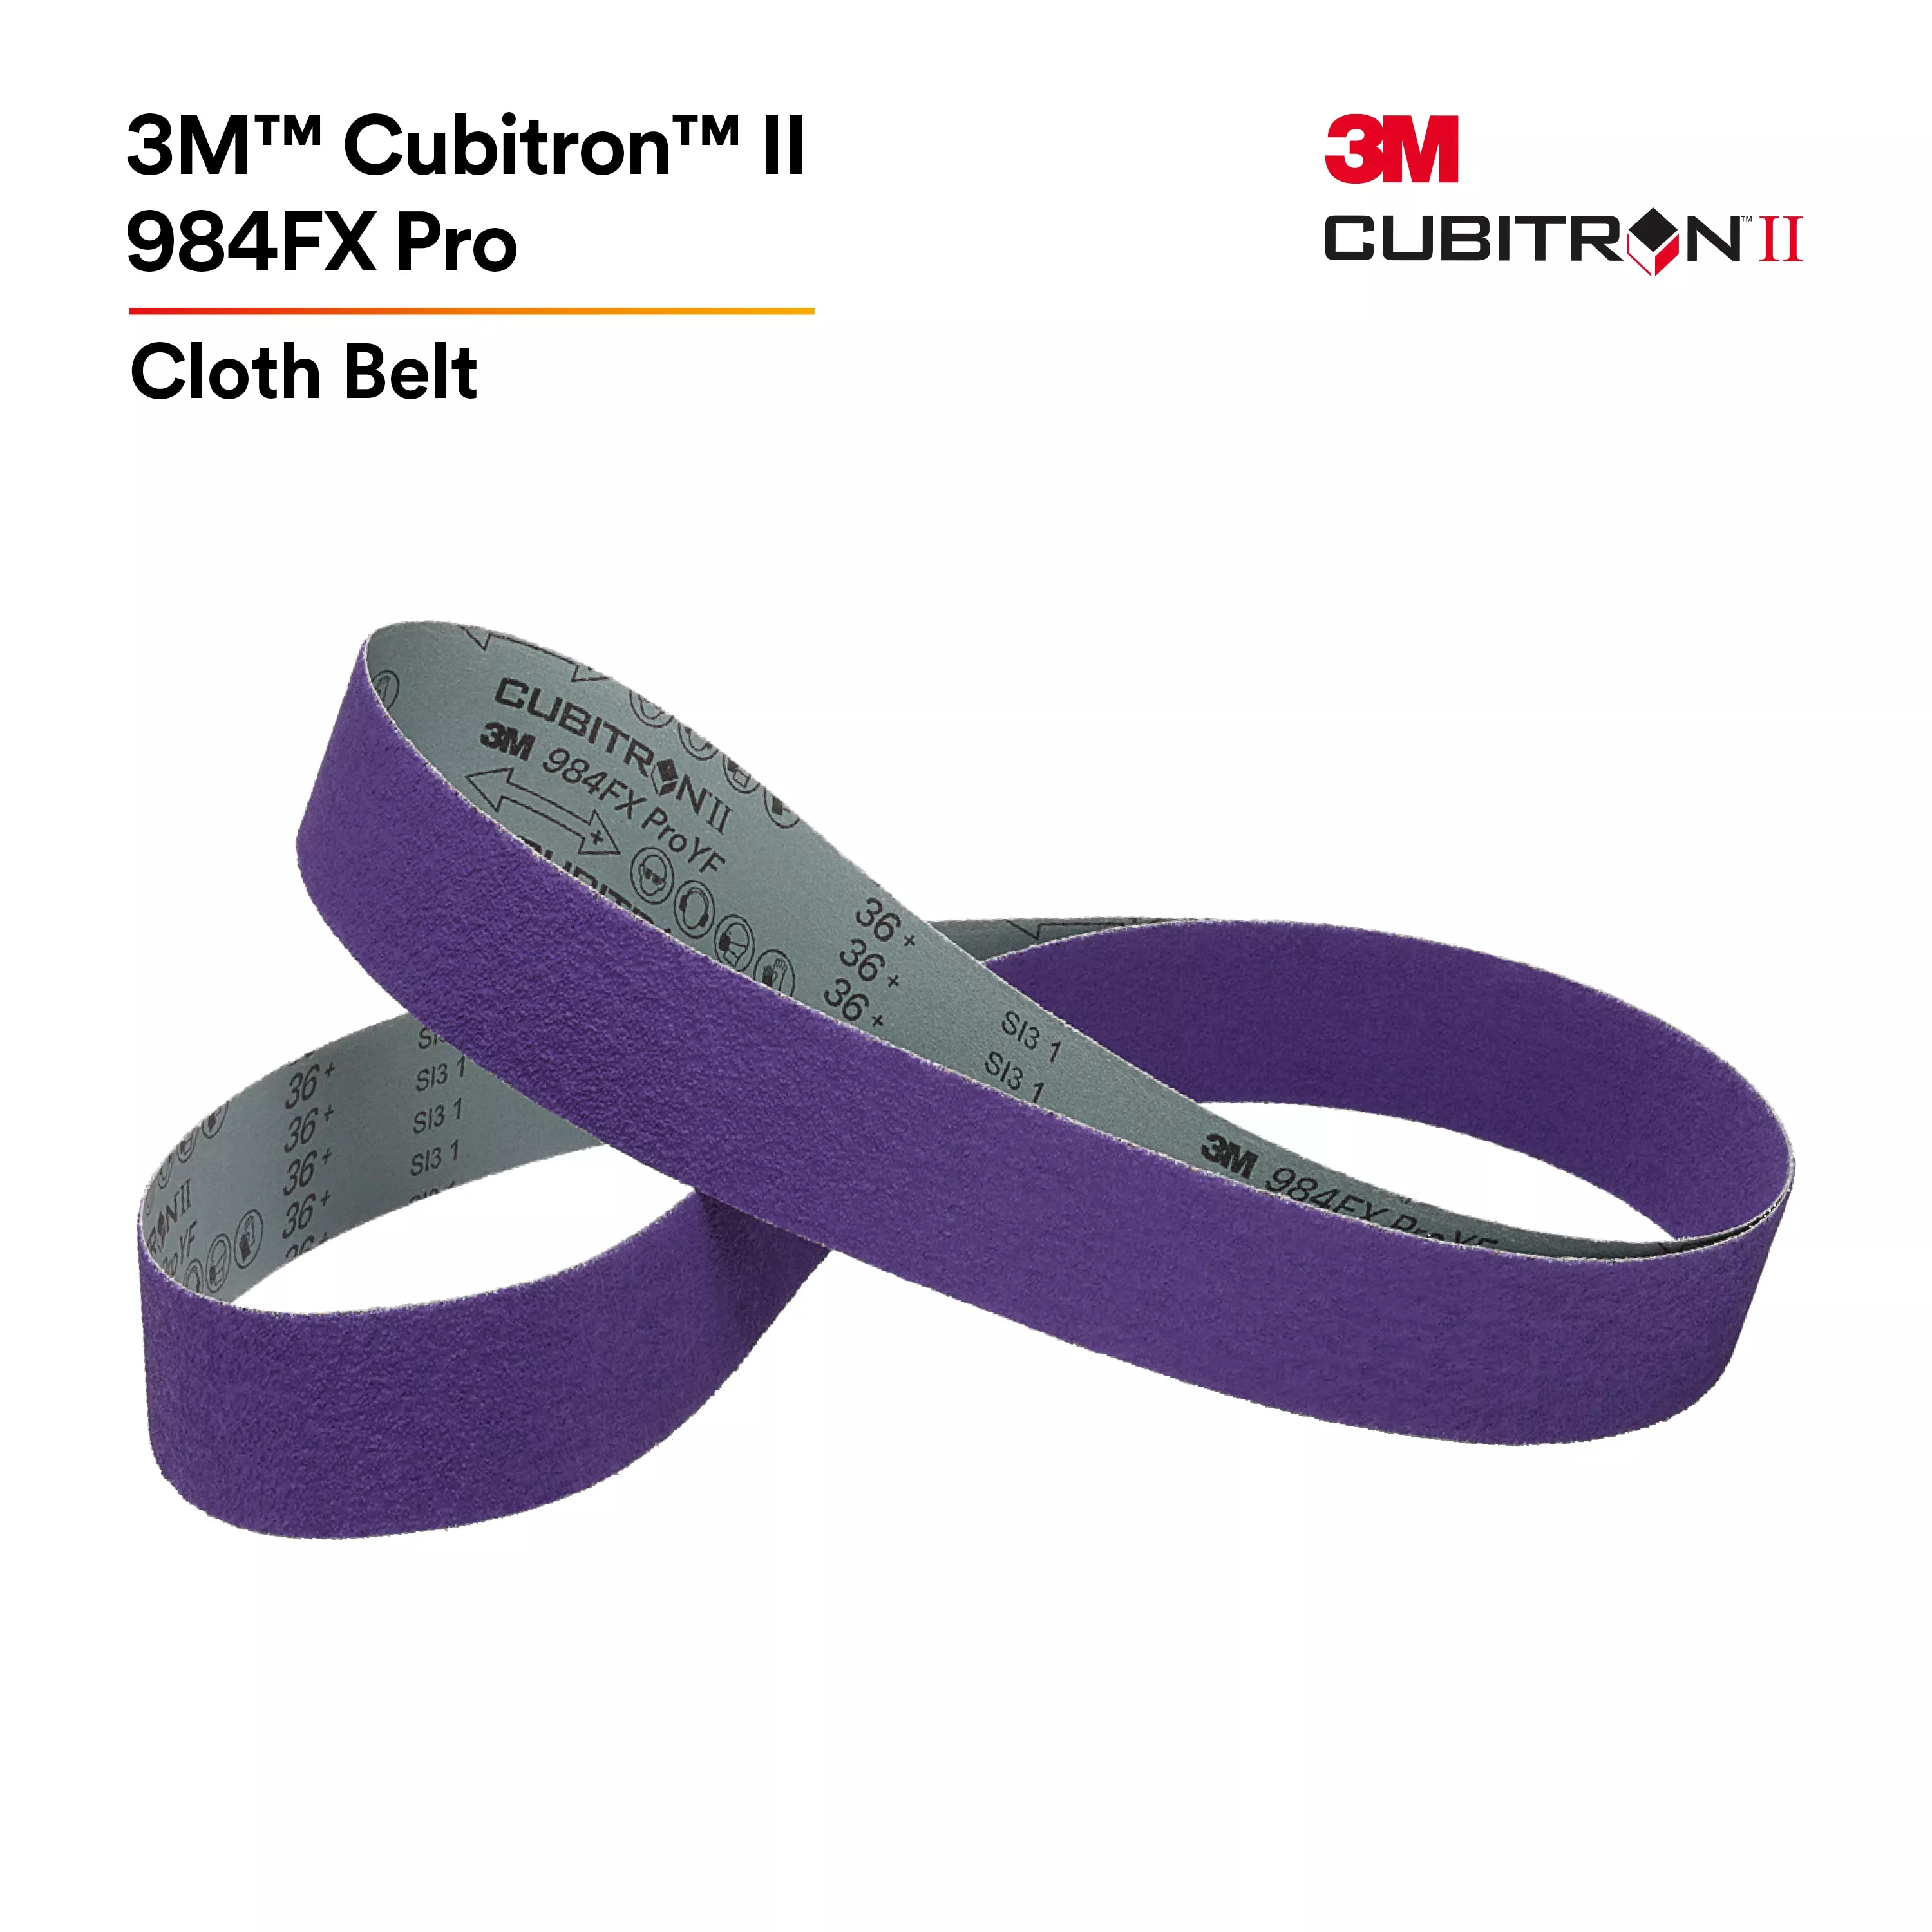 UPC 00638060882726 | 3M™ Cubitron™ II Cloth Belt 984FX Pro